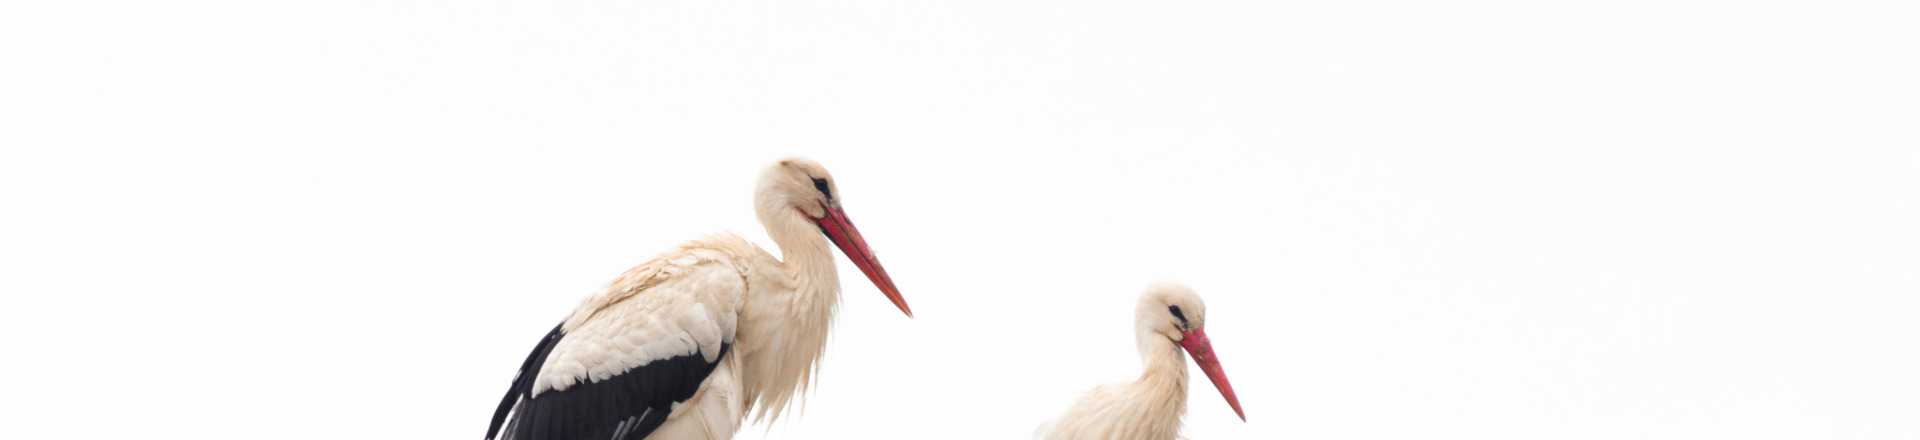 Hogyan beszéljünk a gólyáról? Szülő-gyerek kommunikáció a szexualitásról